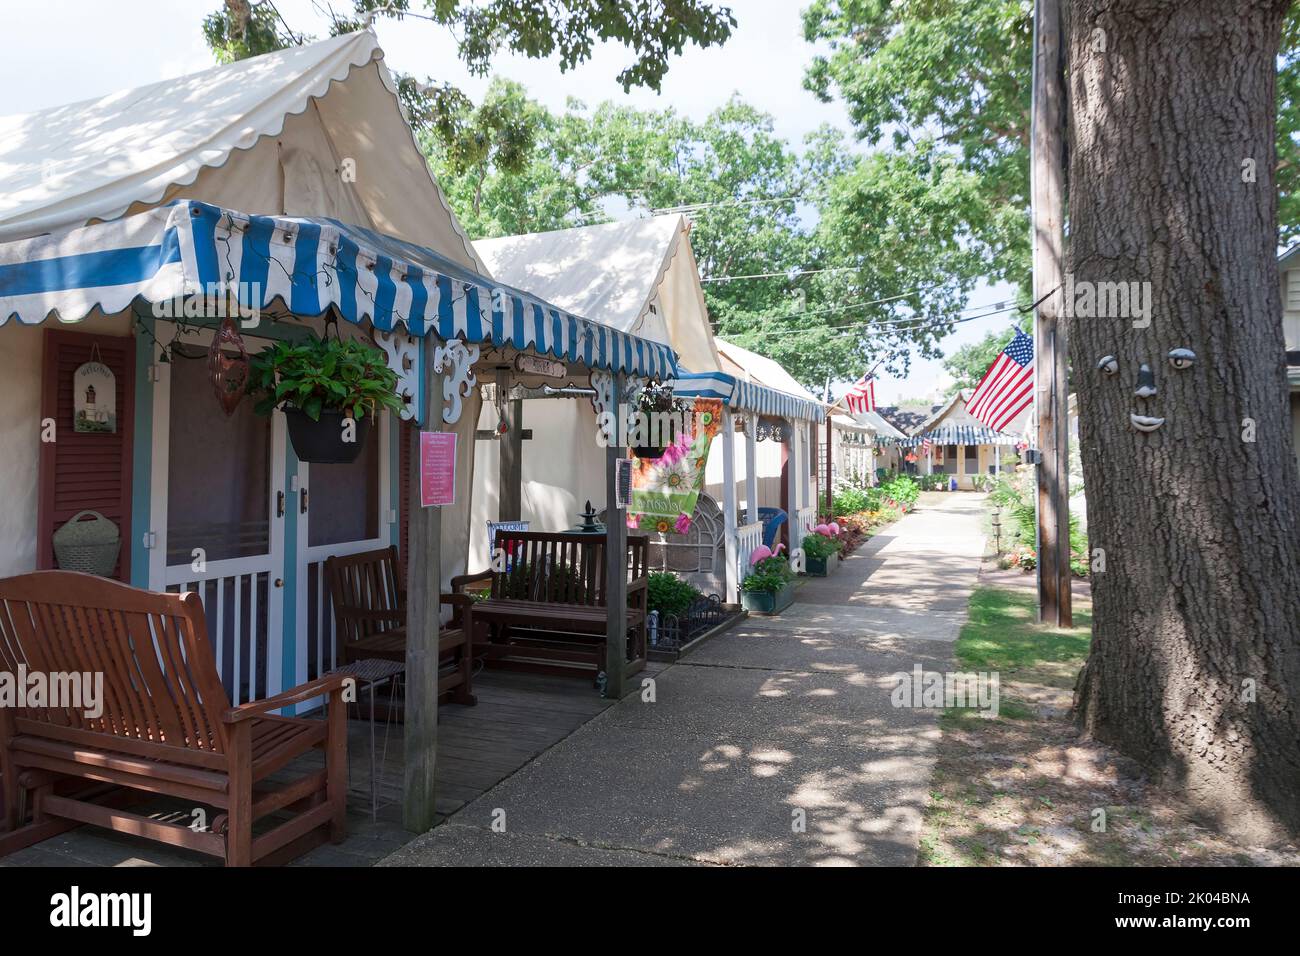 Quartier historique de tentes d'été méthodiste Camp d'Ocean Grove, sur la rive du New Jersey. Banque D'Images